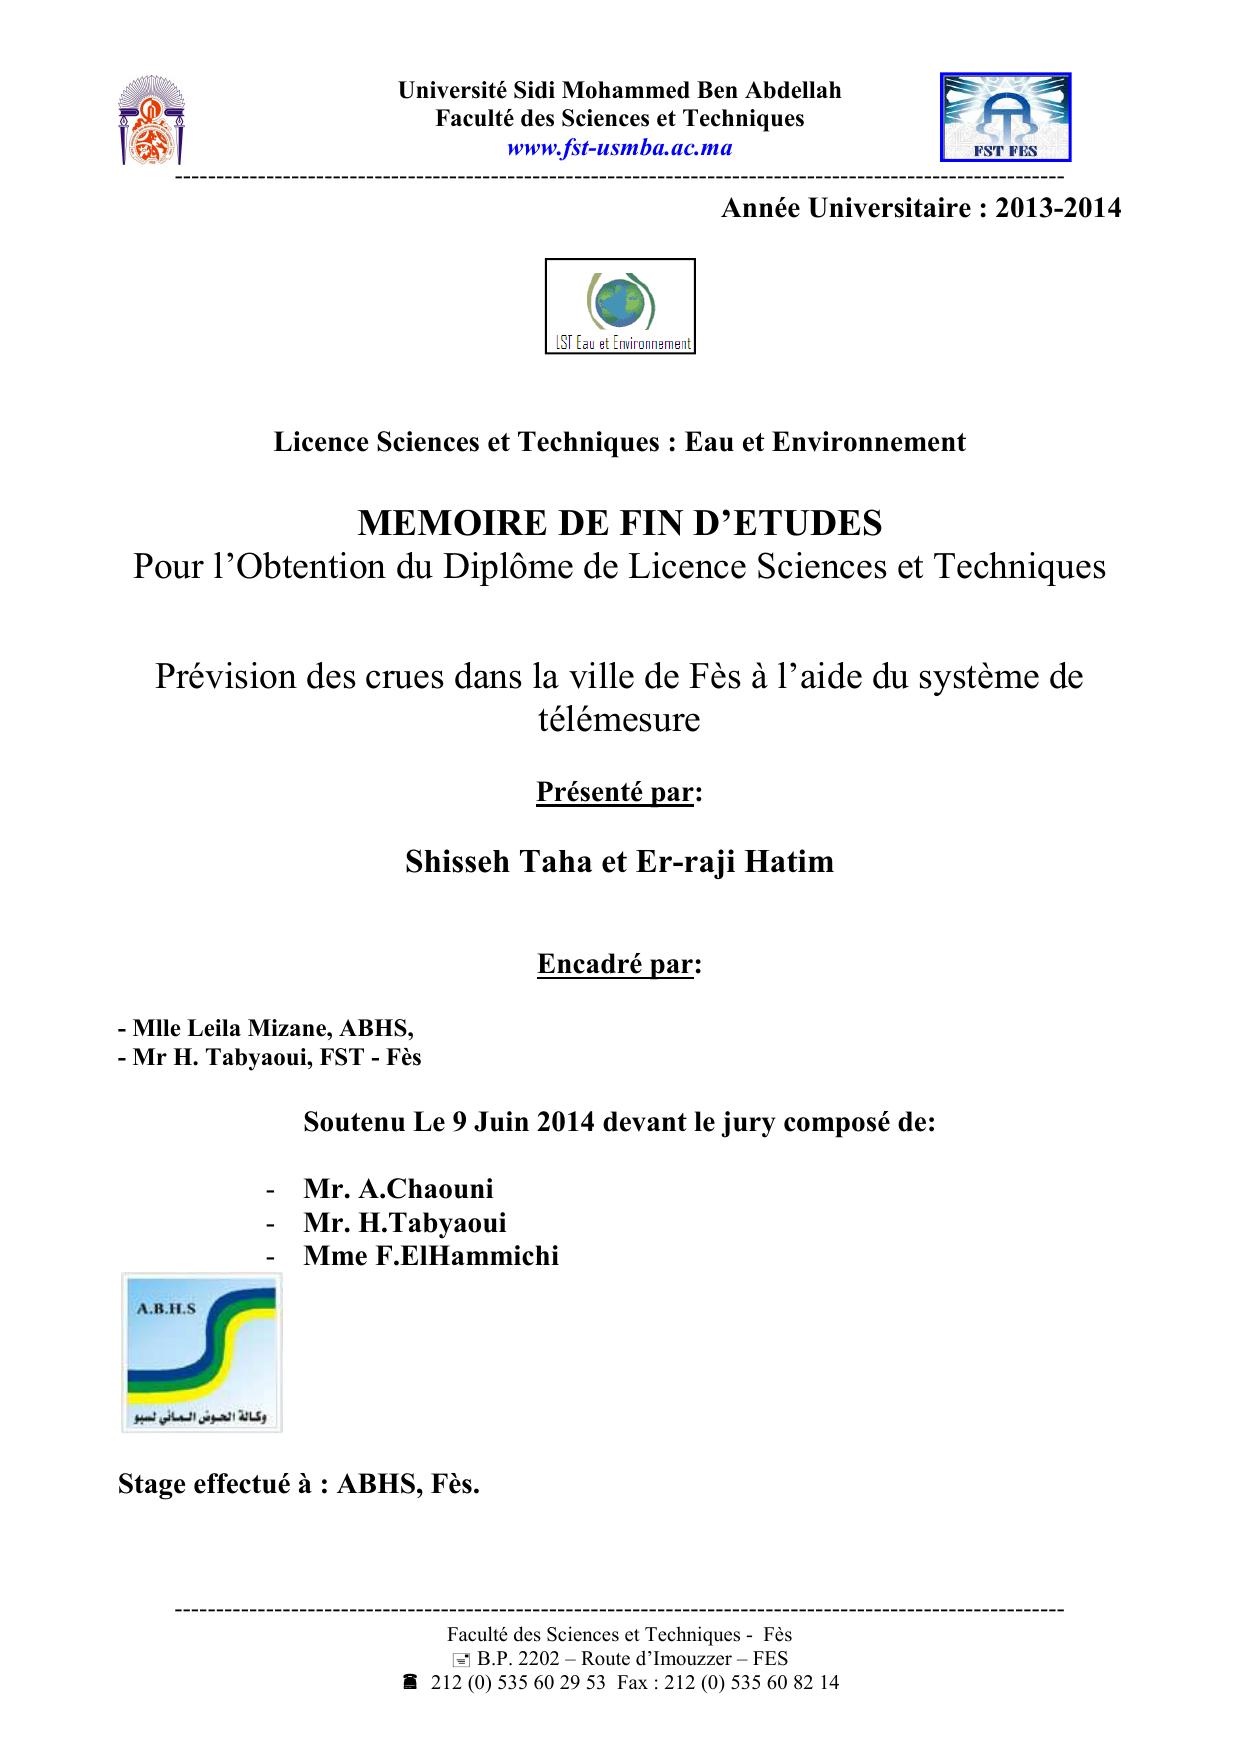 Prévision des crues dans la ville de Fès à l’aide du système de télémesure